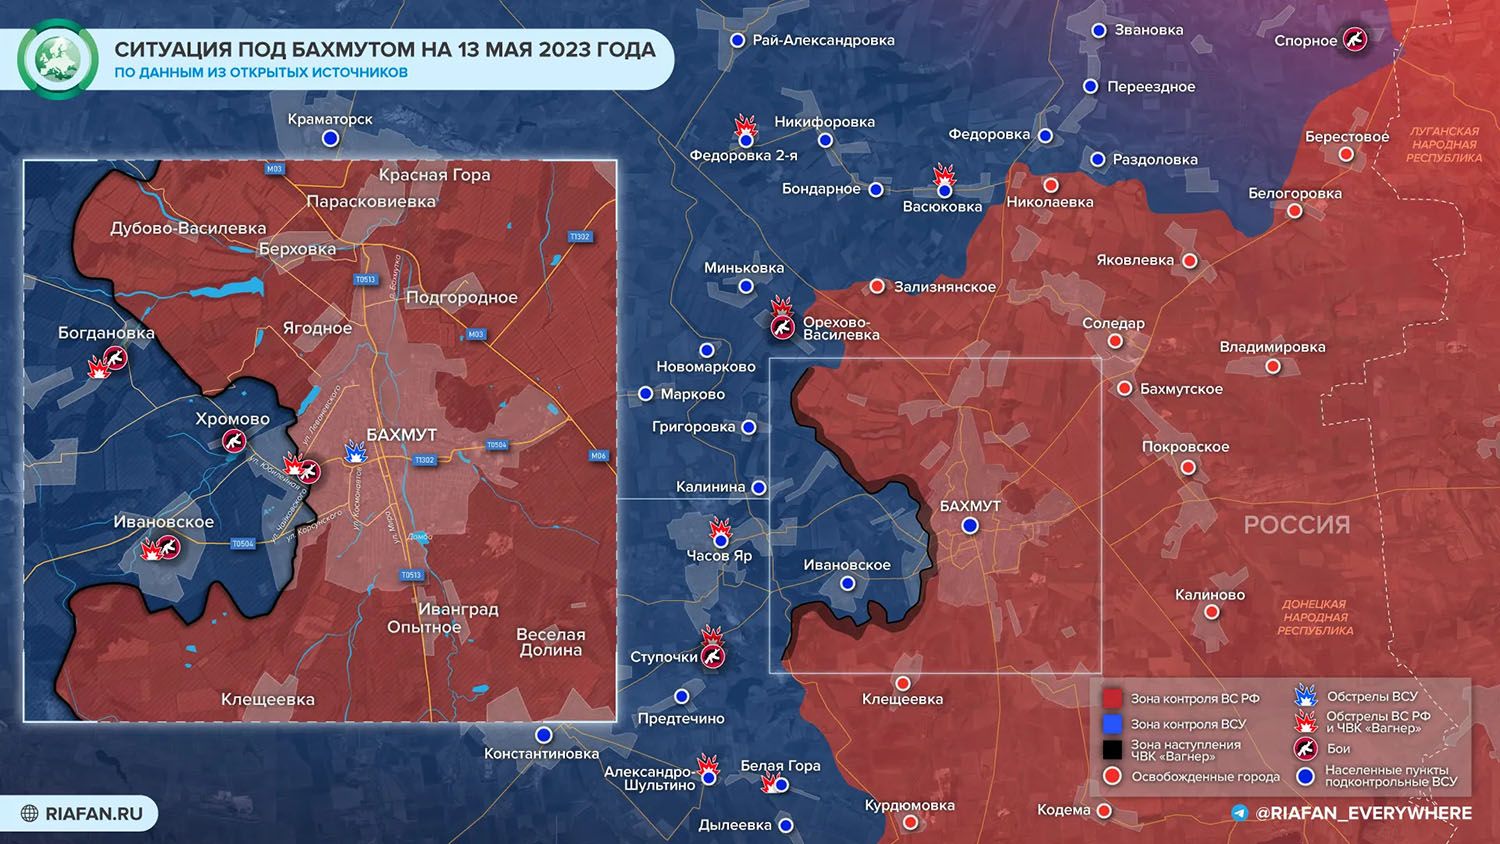 Карта боевых действий на Украине сегодня, 13.05.2023 г. от ФАН